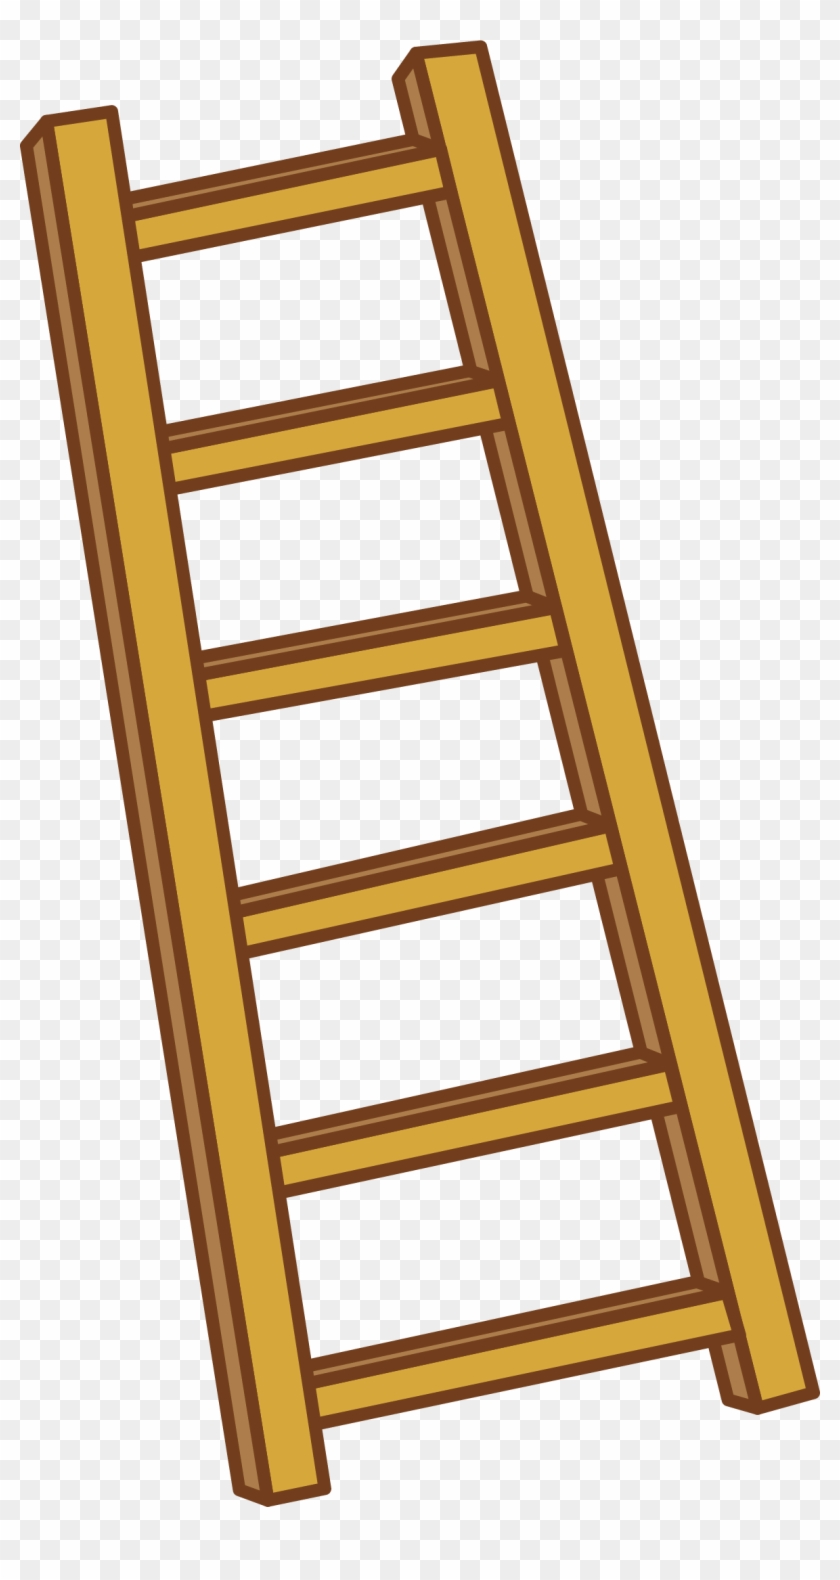 Ladder clip art.